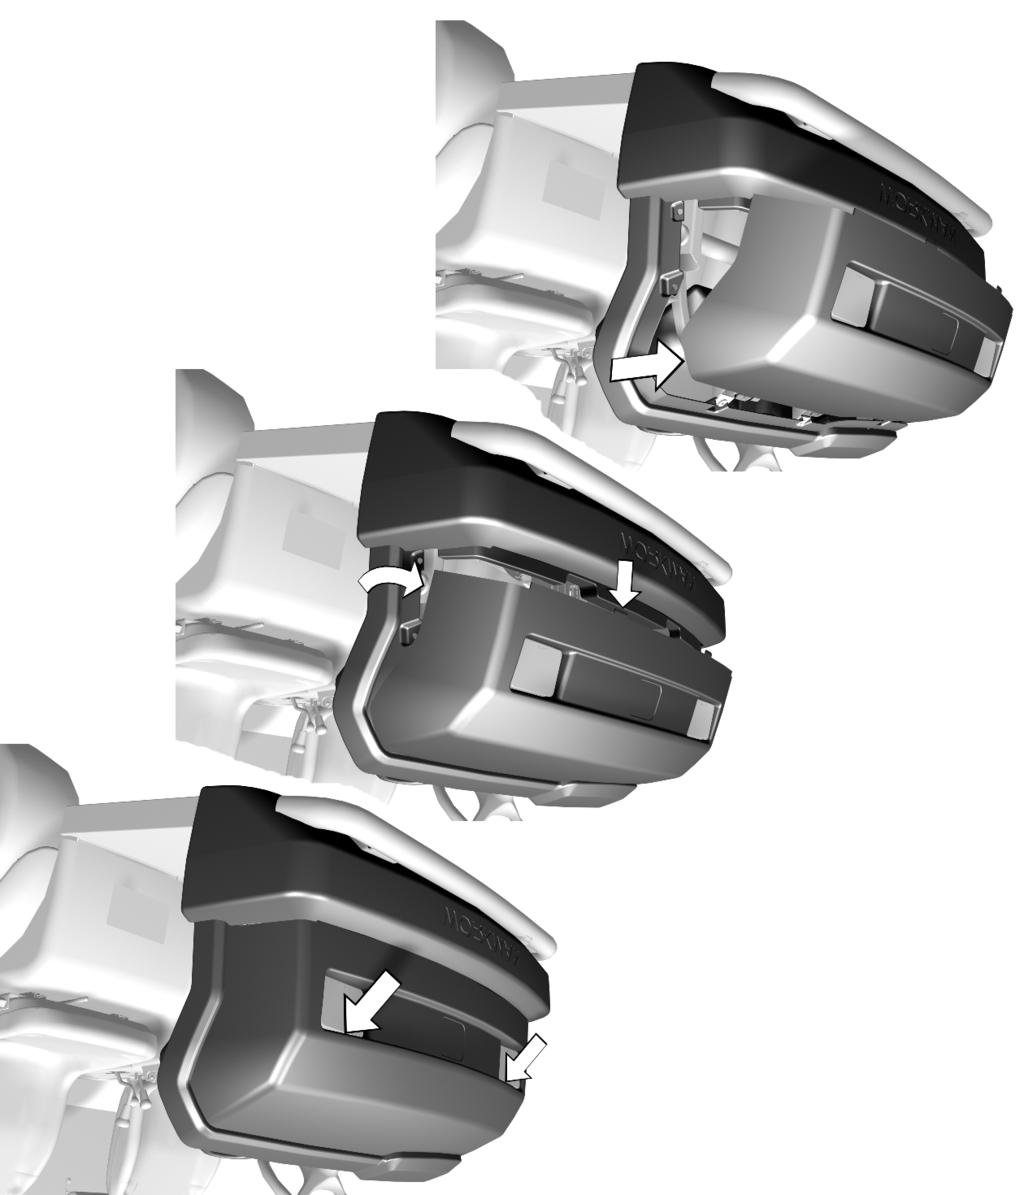 Fassen Sie die Motorhaube in den Scheinwerferöffnungen an und heben sie an, um die unteren Befestigungsnasen aus den Rahmenschlitzen zu heben (Bild 3).